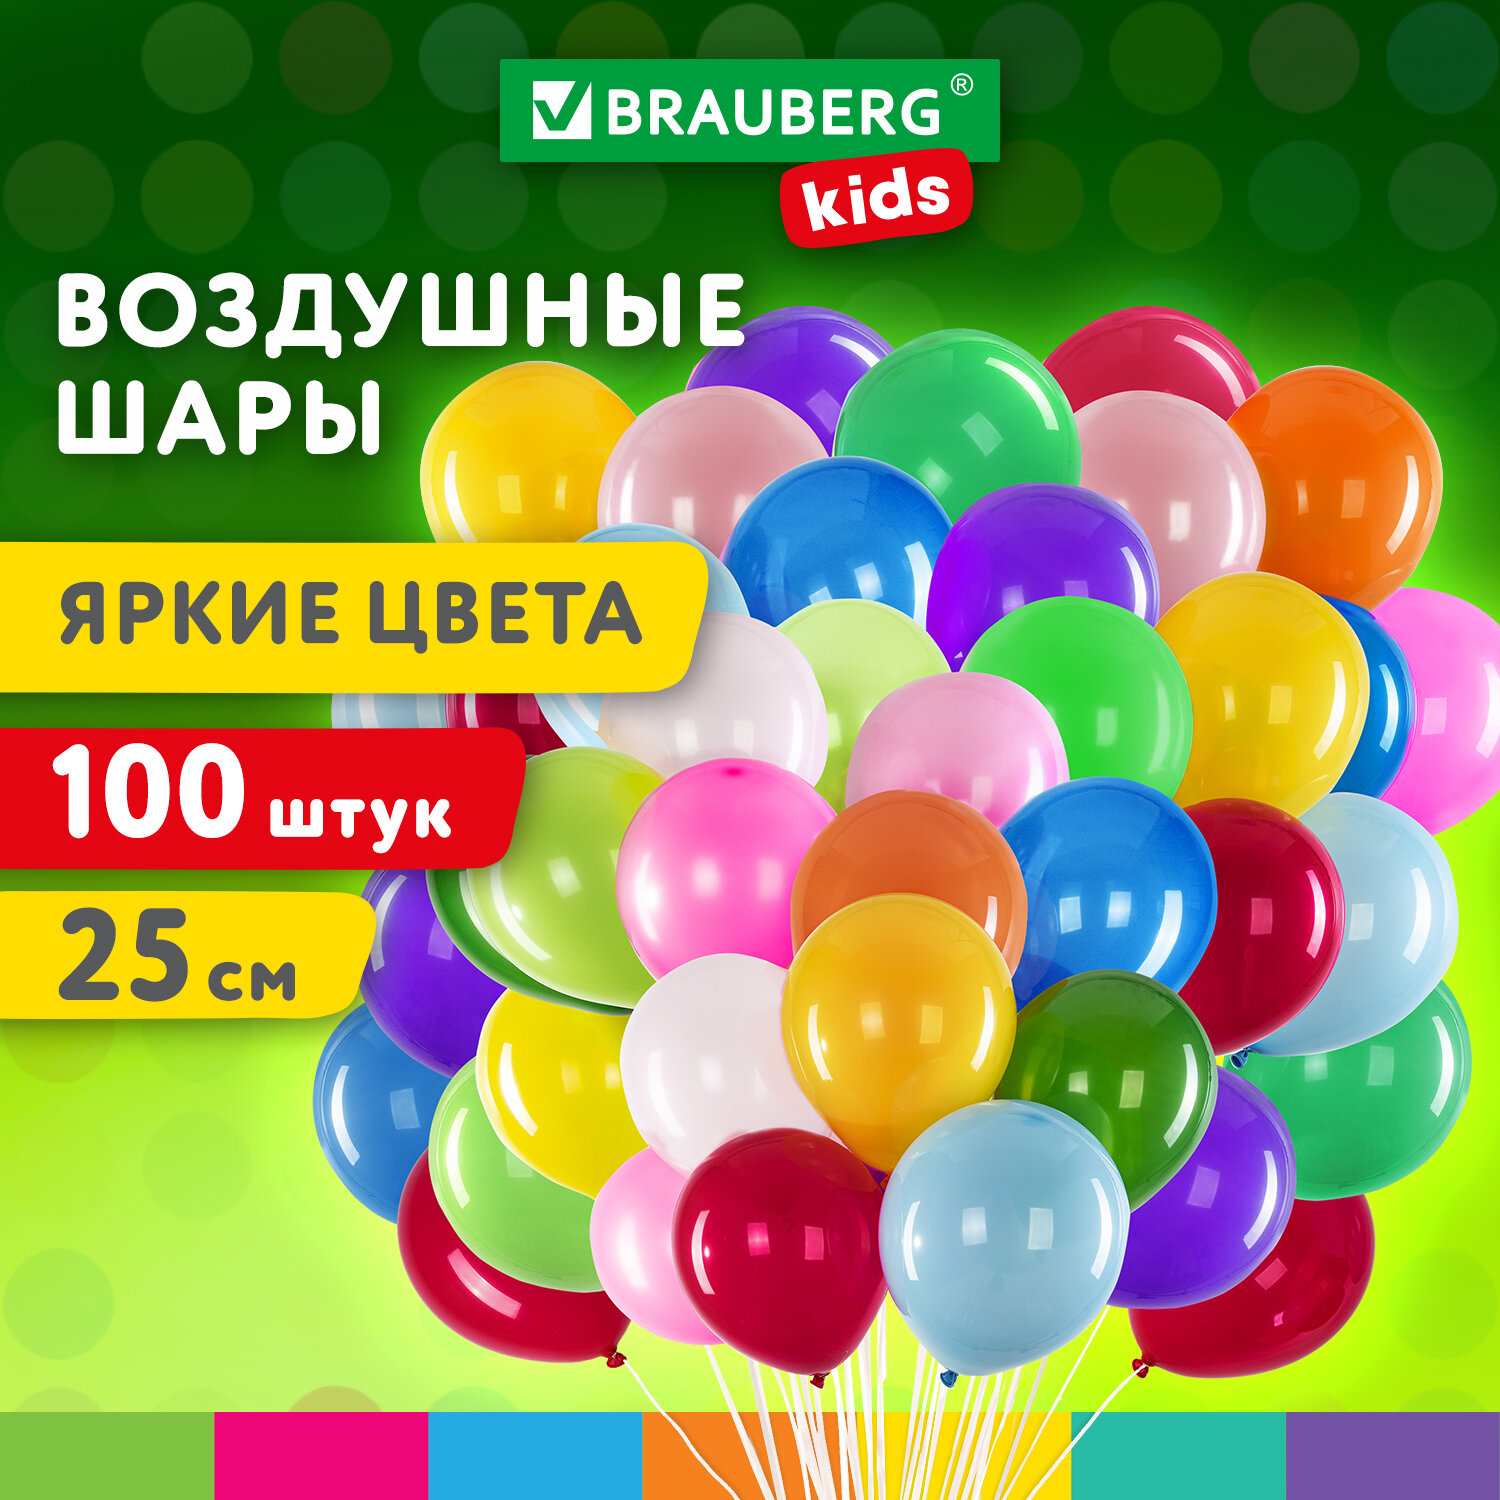 Шарики воздушные Brauberg Kids 591873 набор на день рождения, для фотозоны, 25 см, 100 шт воздушные шары для фотозоны